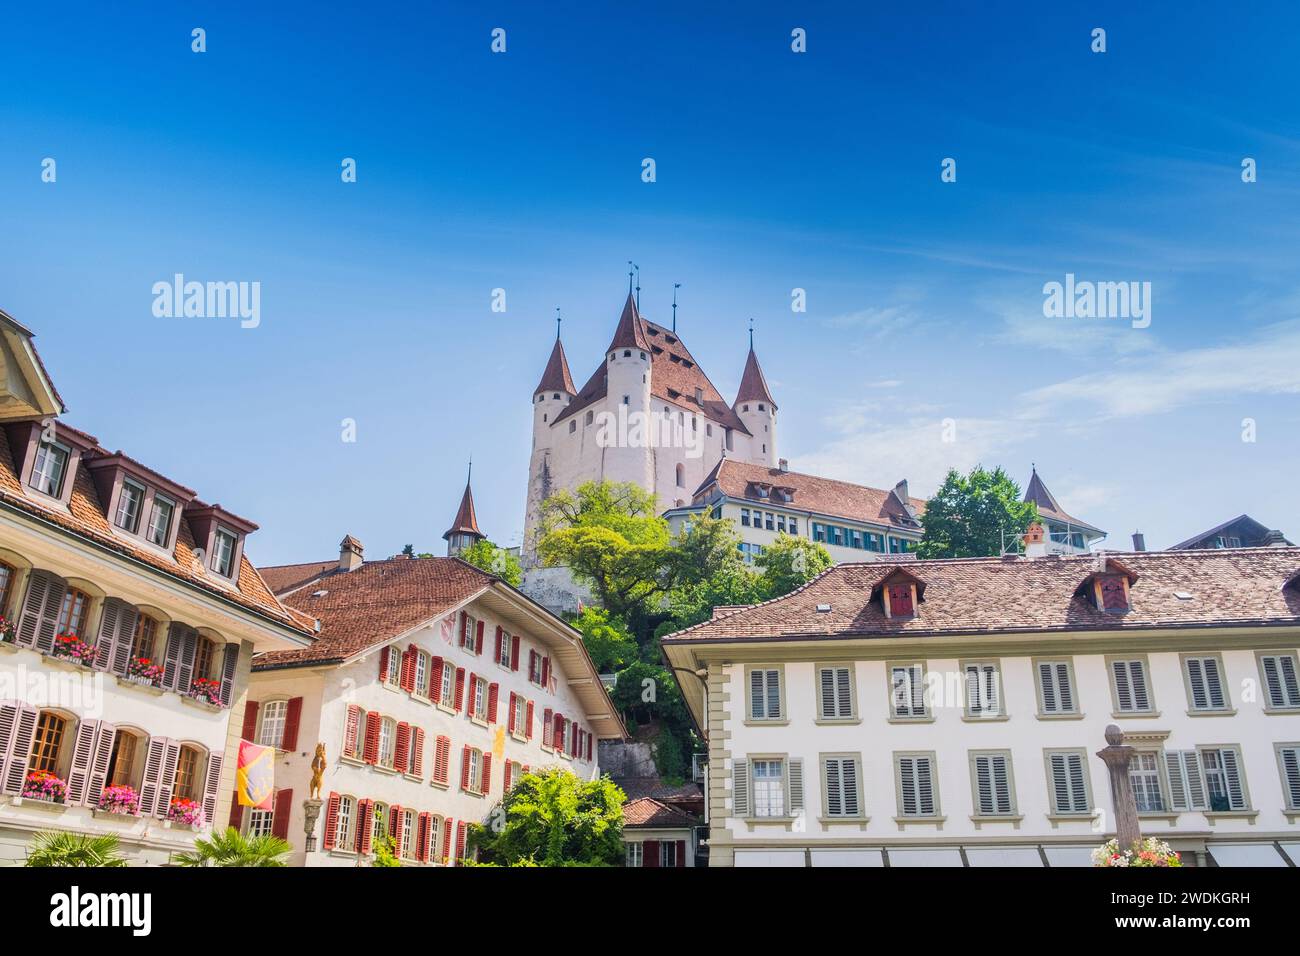 Château de Thun dans la ville de Thun, Suisse, paysage urbain historique étonnant Banque D'Images